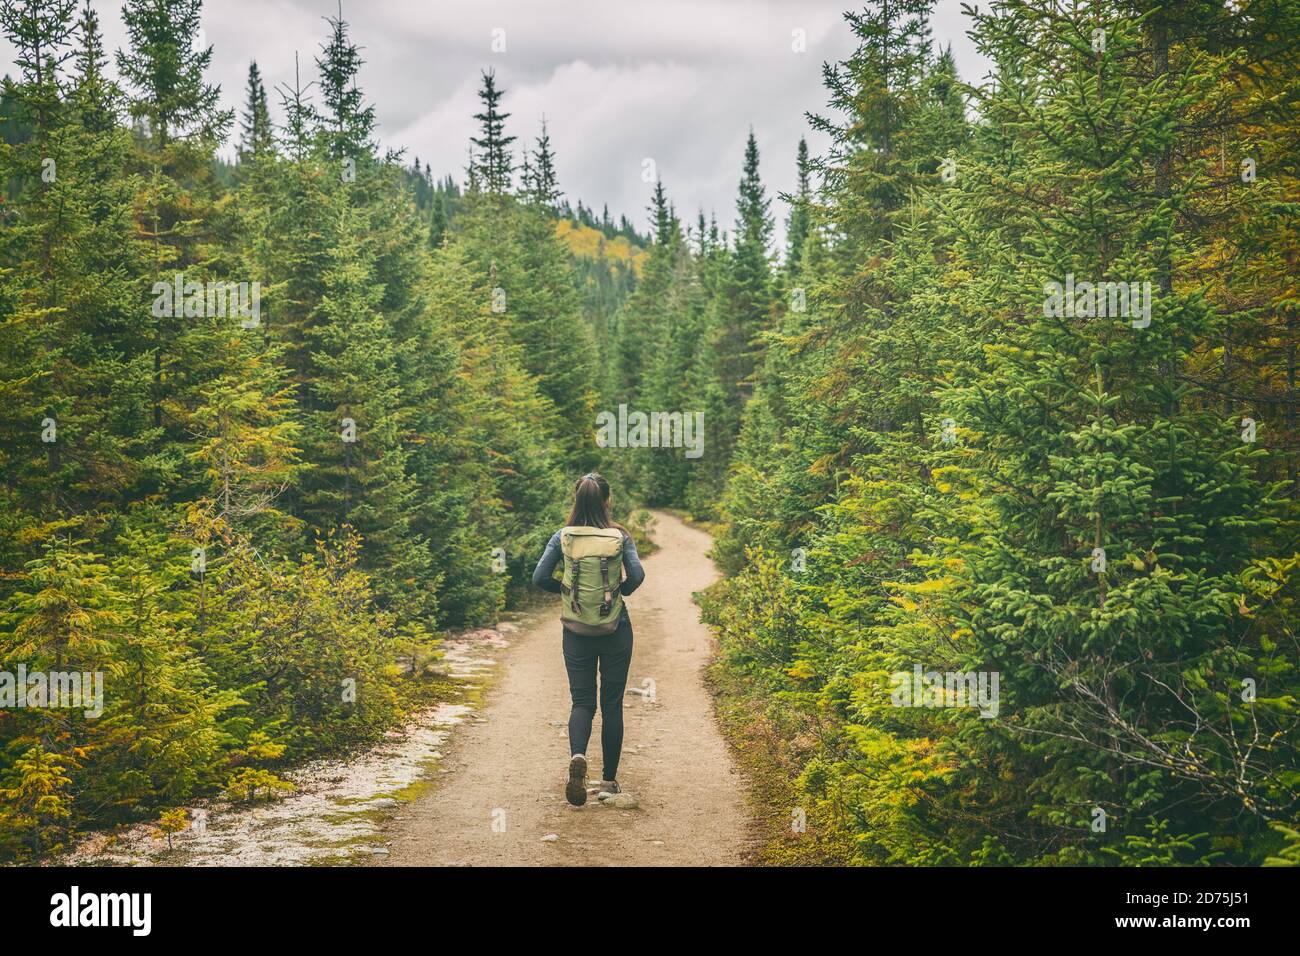 Wanderer reisen Frau zu Fuß auf Wanderweg Wanderweg Pfad im Wald von Pinien. Kanada Reise Abenteuer Mädchen Tourist Trekking im Freien Natur Stockfoto